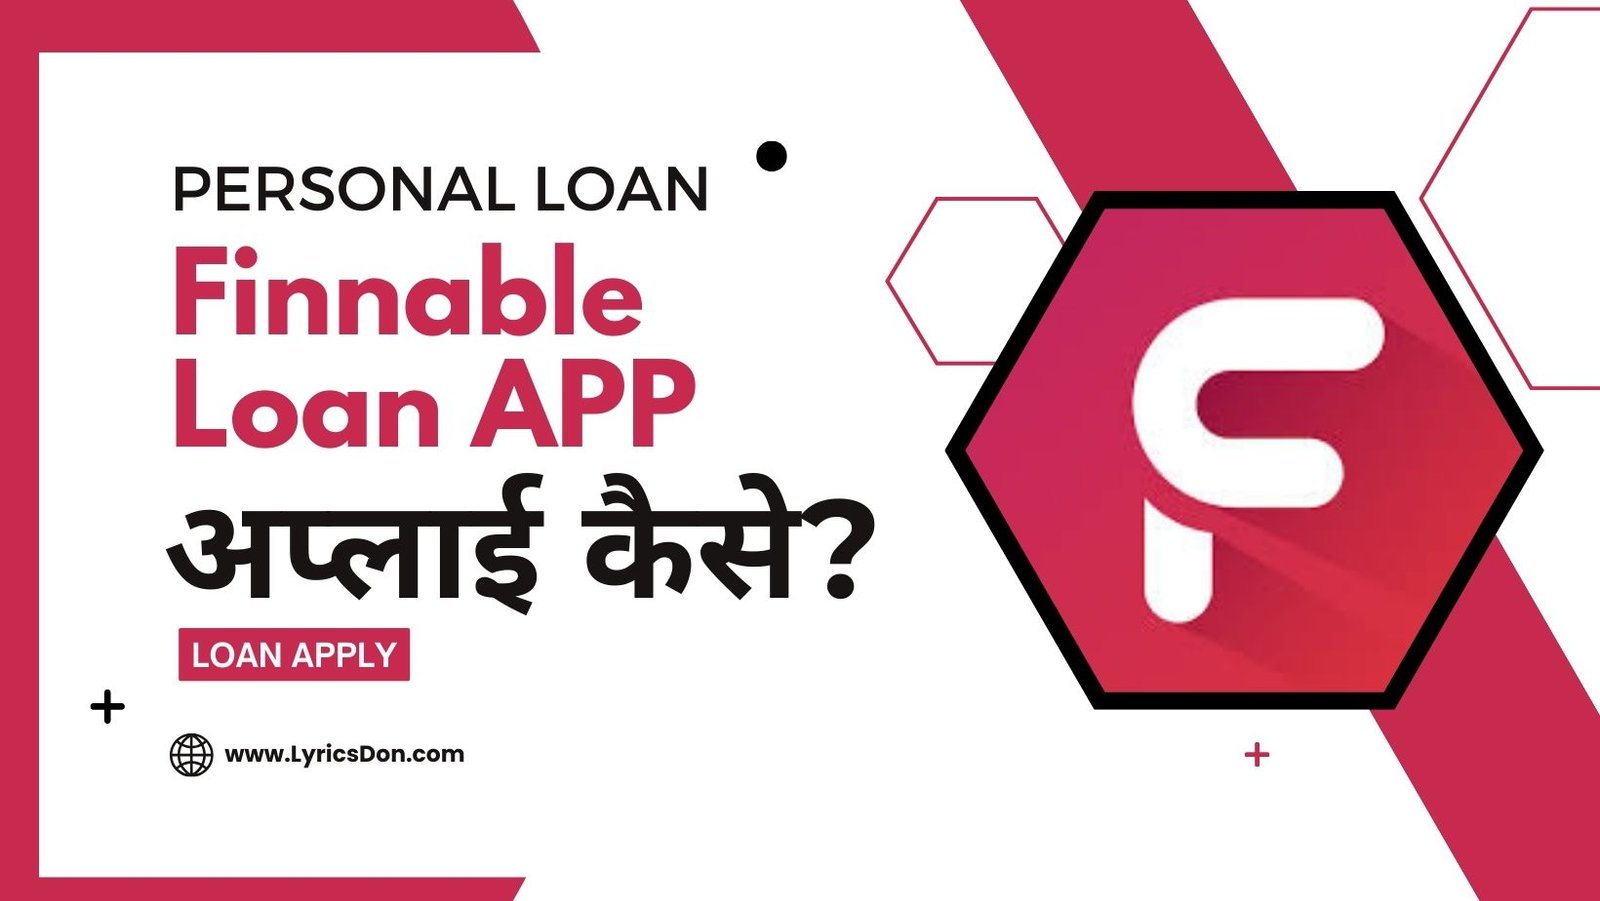 Finnable Loan App से लोन कैसे लें?